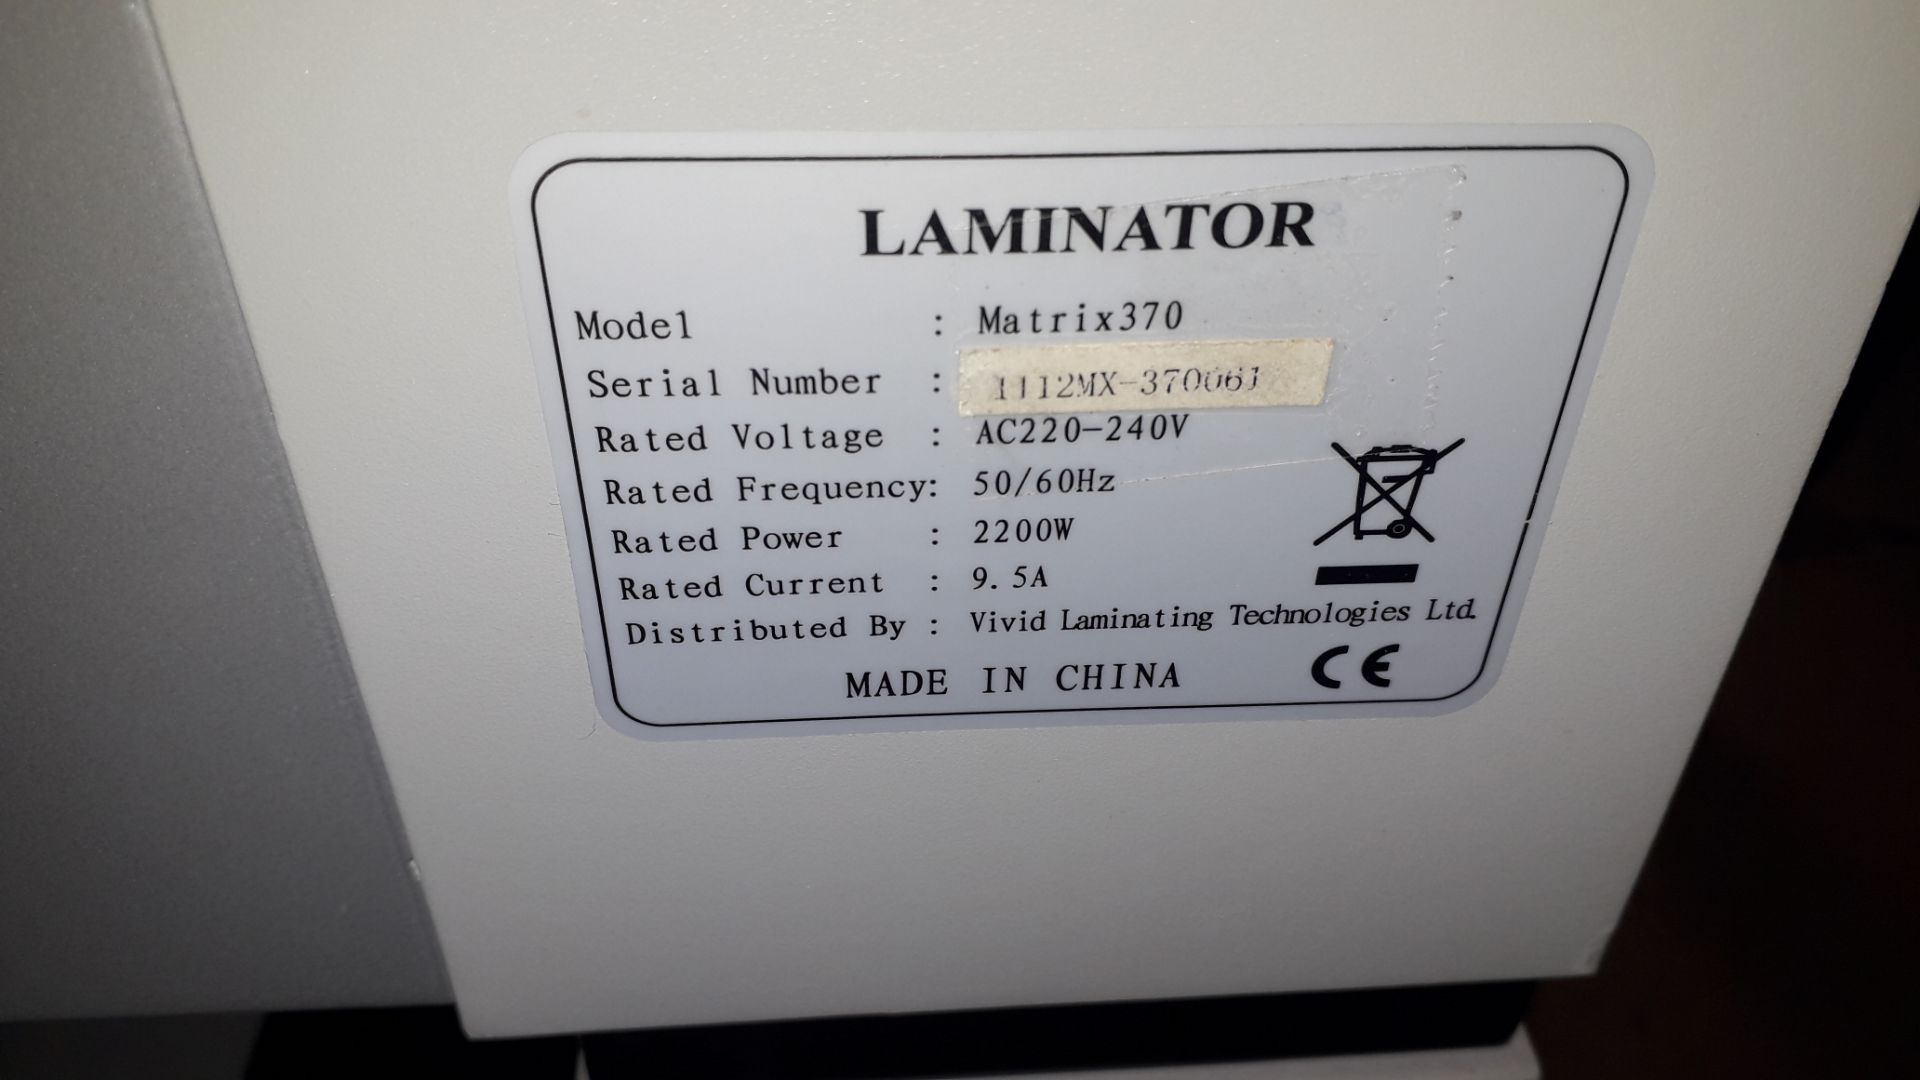 Vivid Laminating Matrix 370 single side laminator, S/N 1112WX-370051 - Image 5 of 6